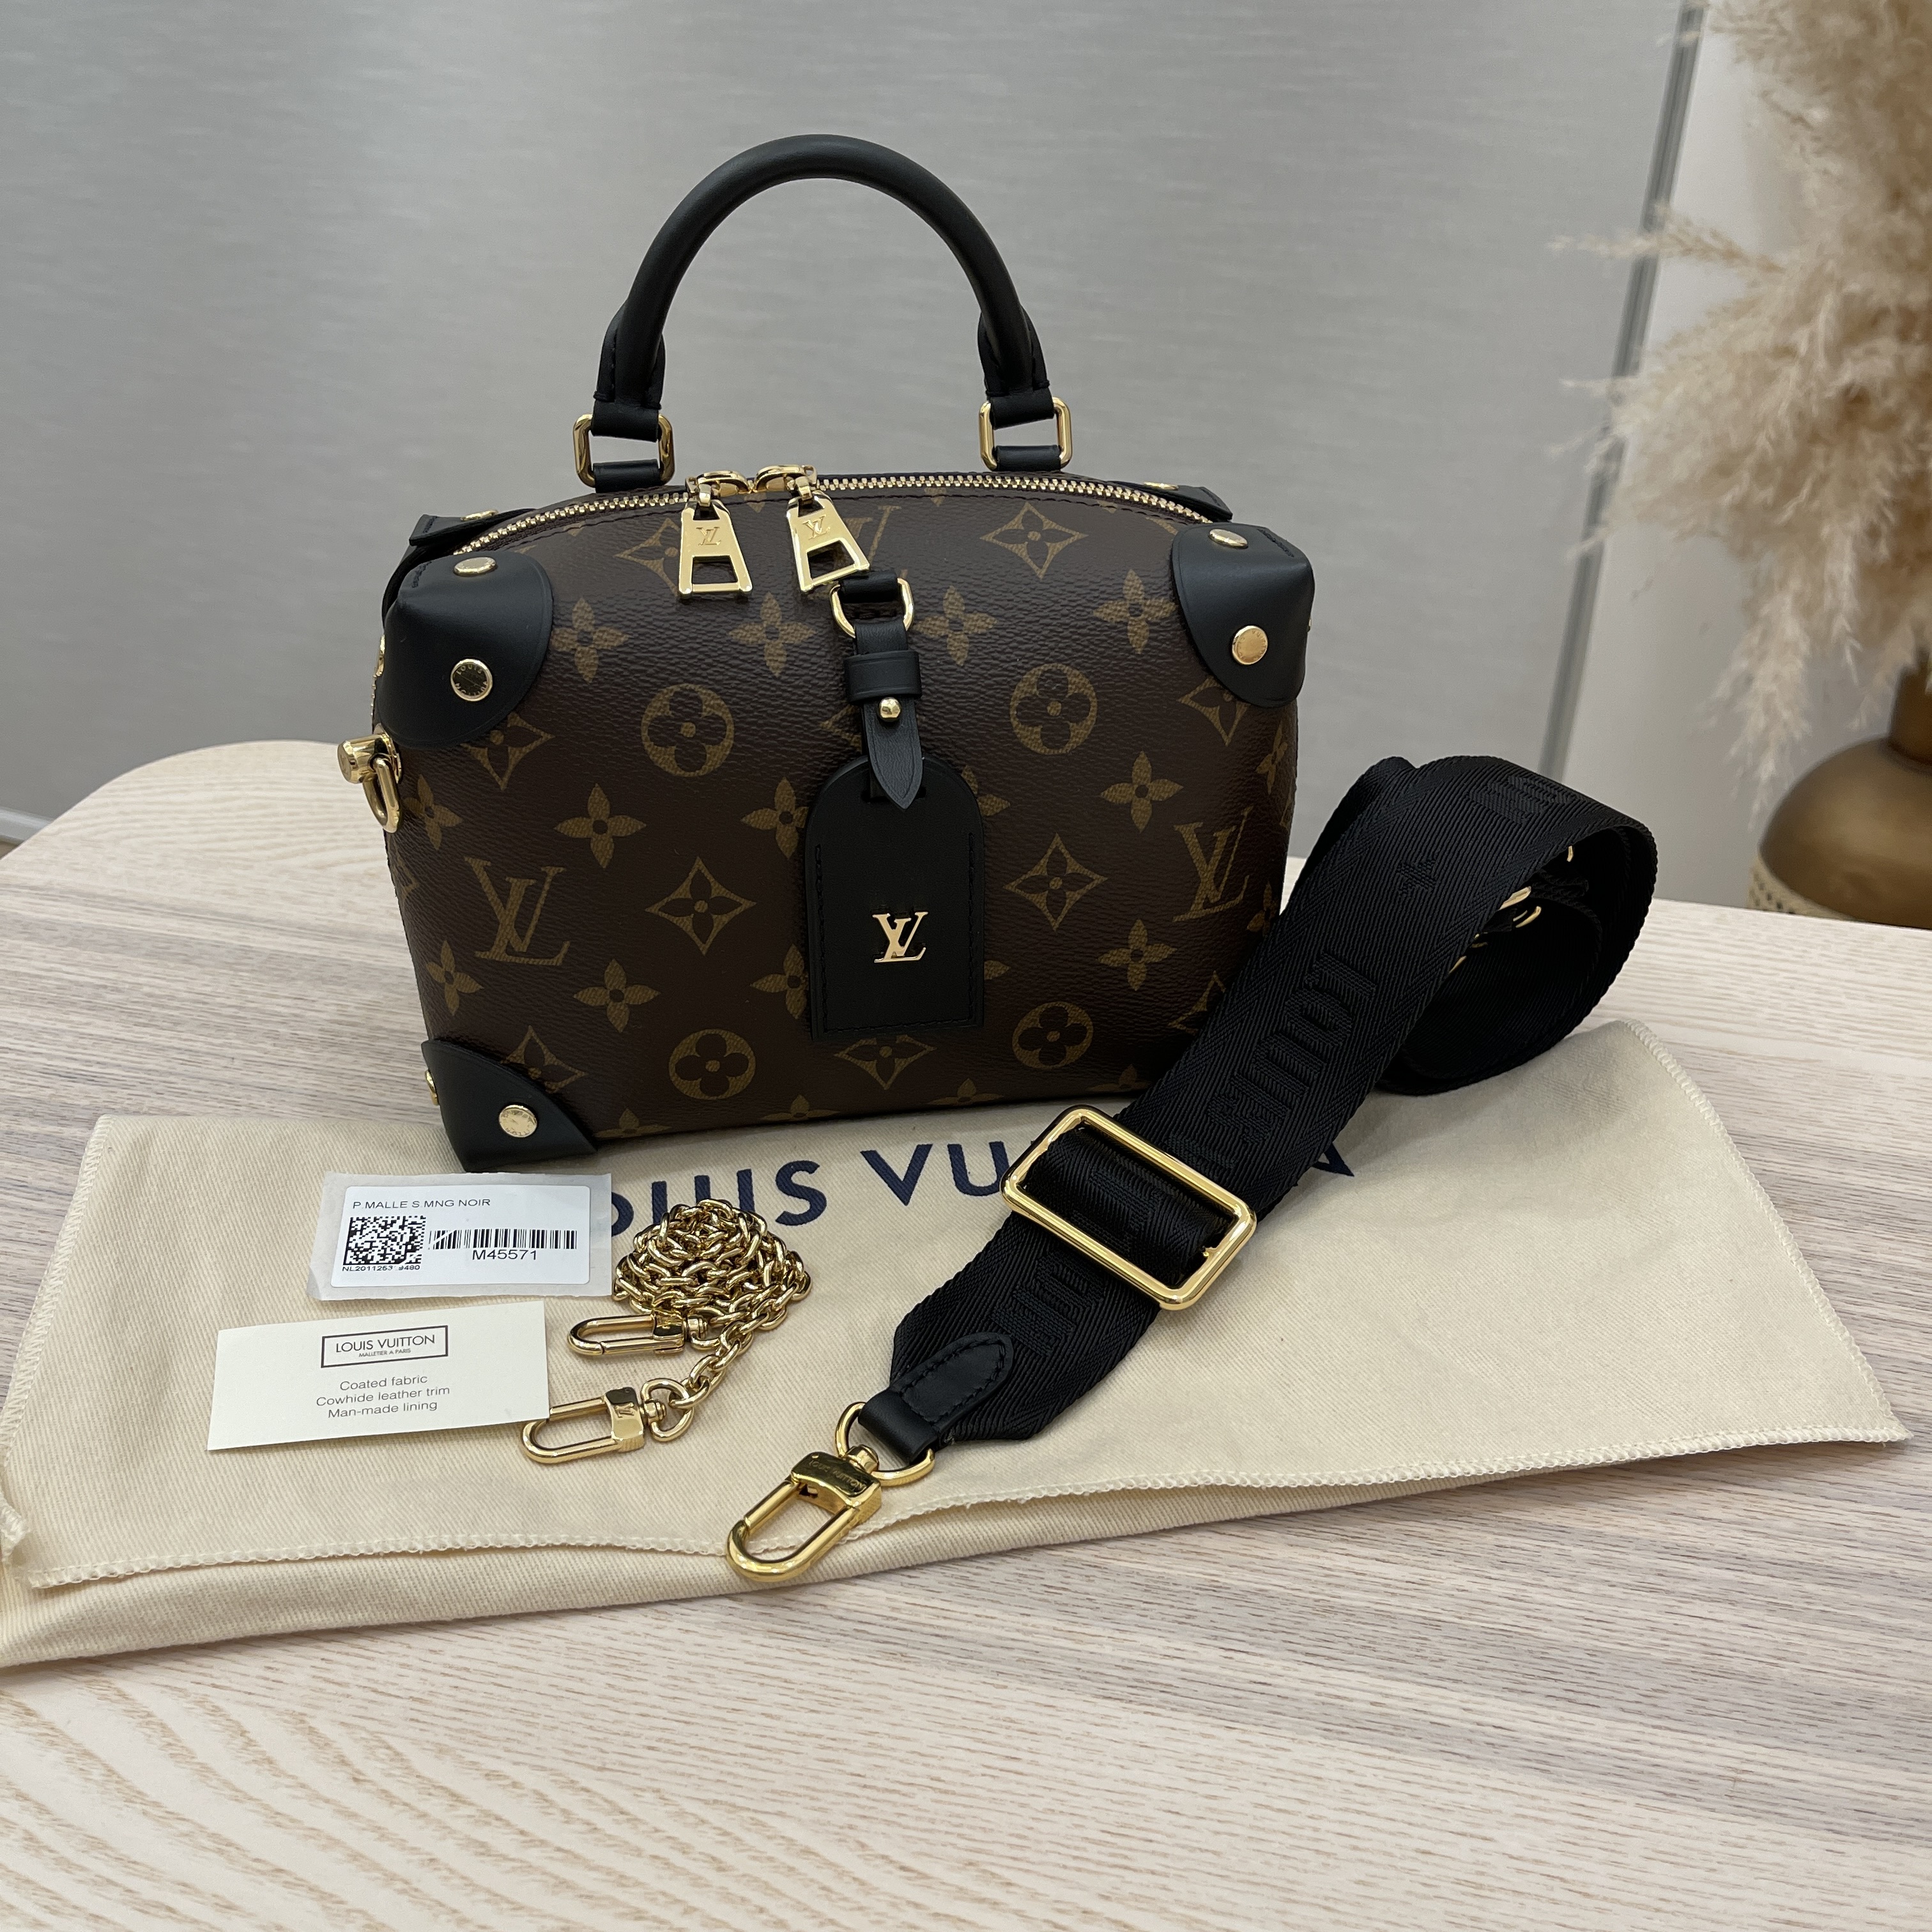 Louis Vuitton Petite Malle Souple - Exclusive (PETITE MALLE SOUPLE, M45571)